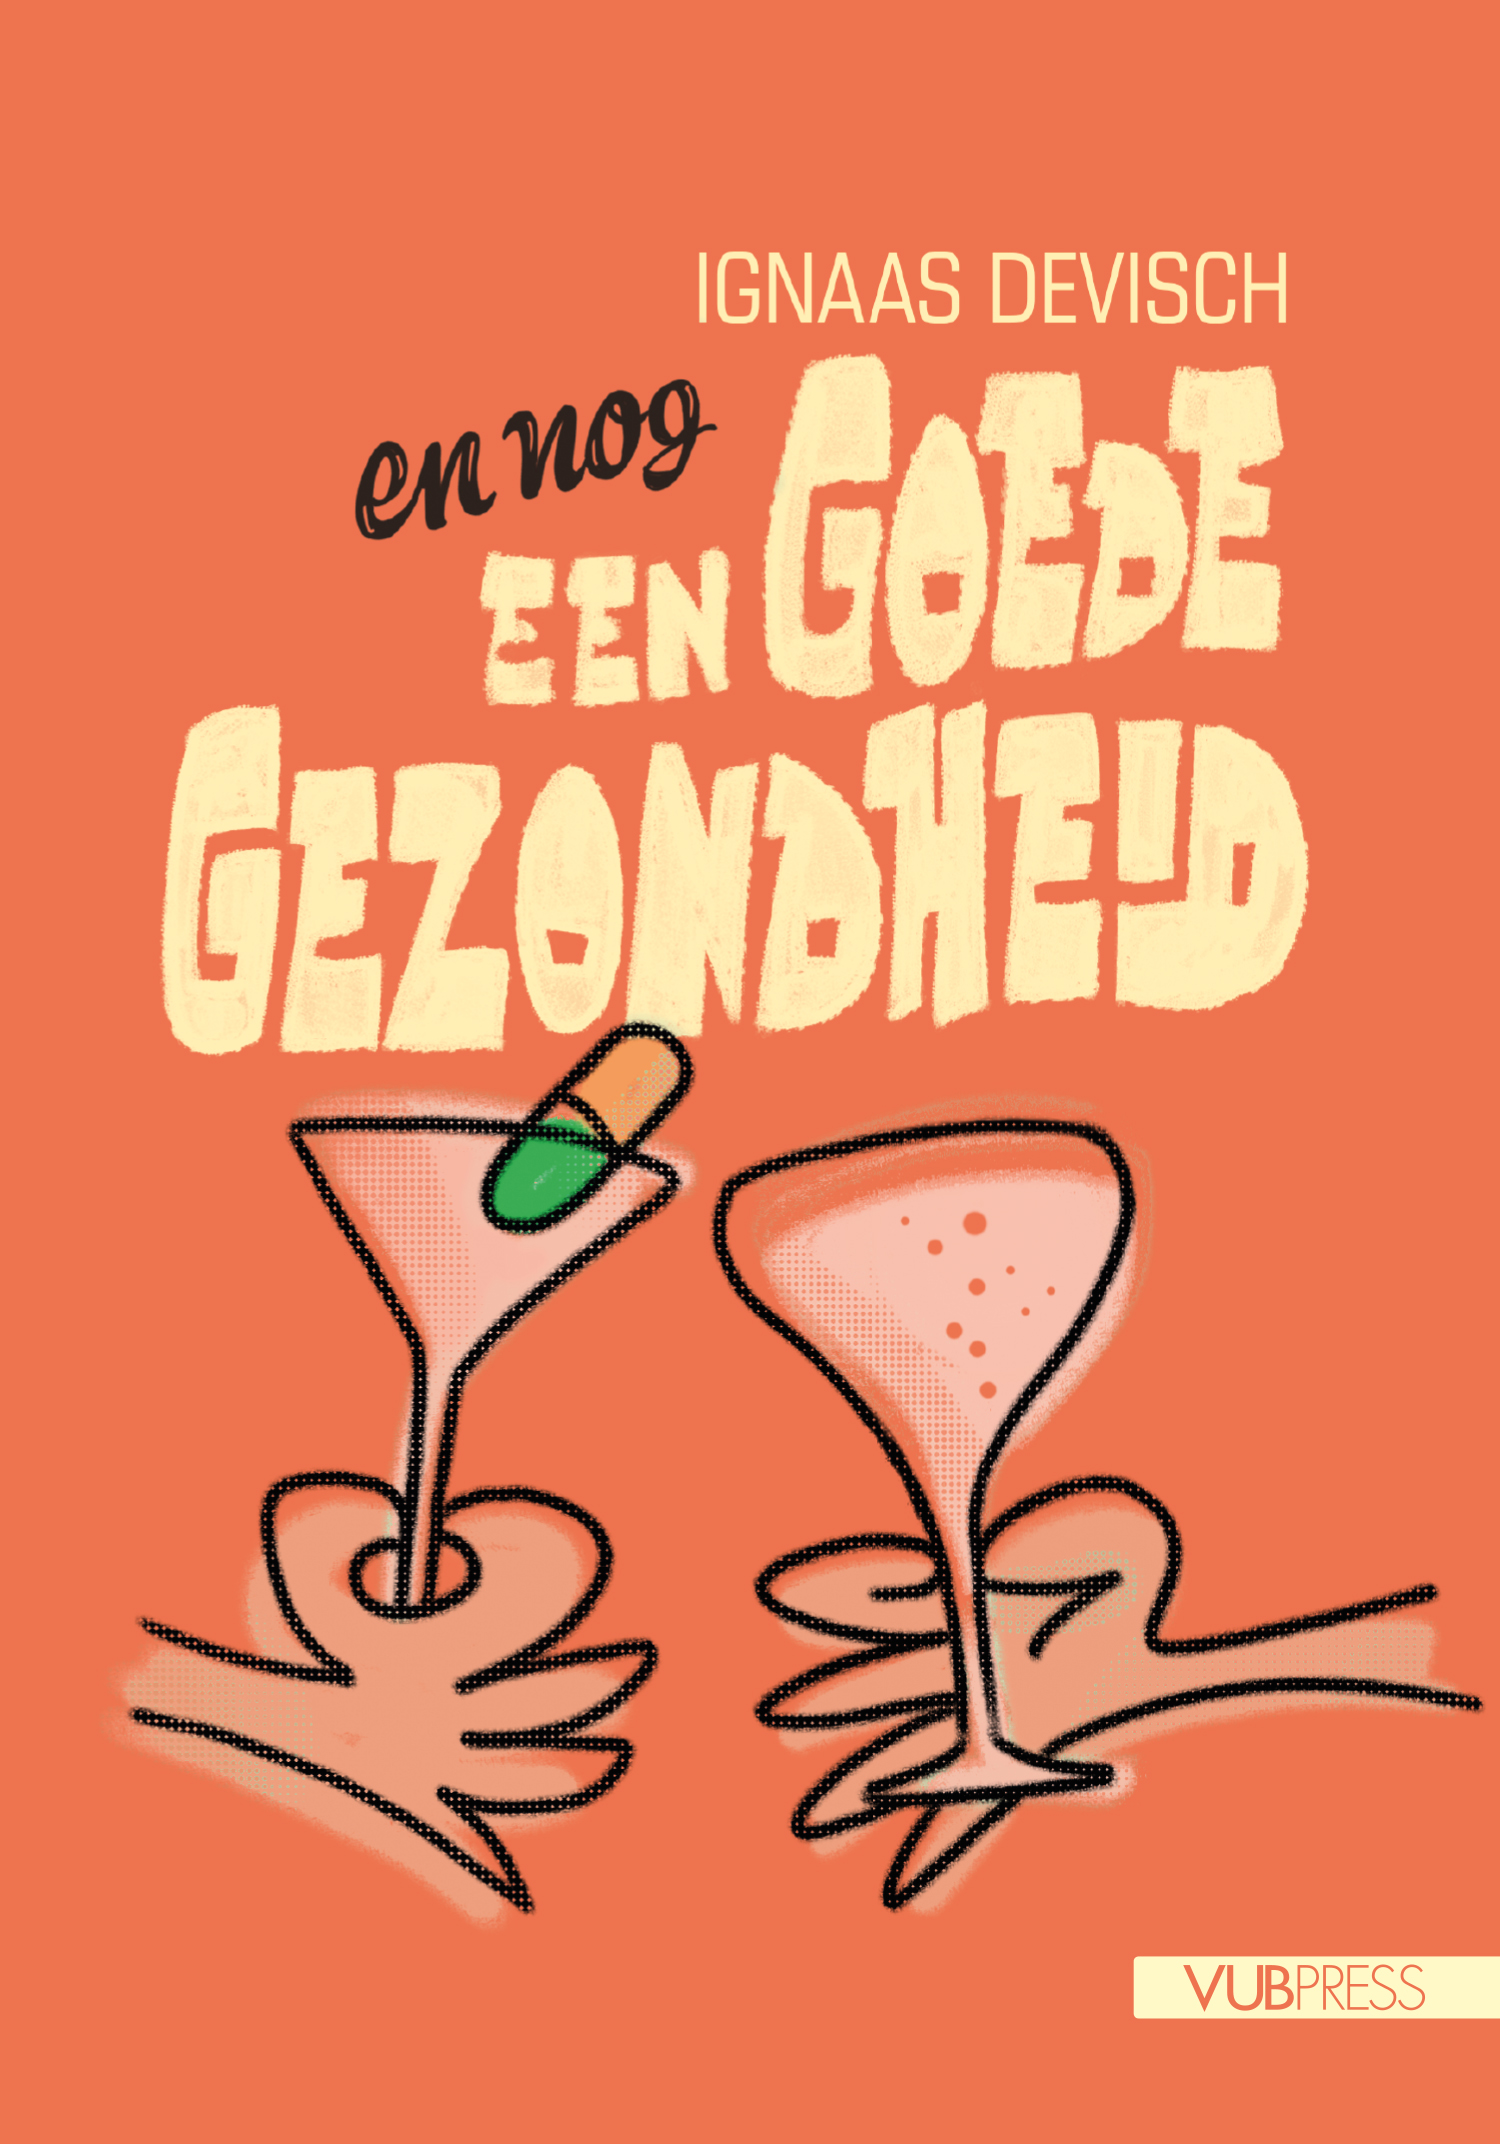 EN NOG EEN GOEDE GEZONDHEID (NL)